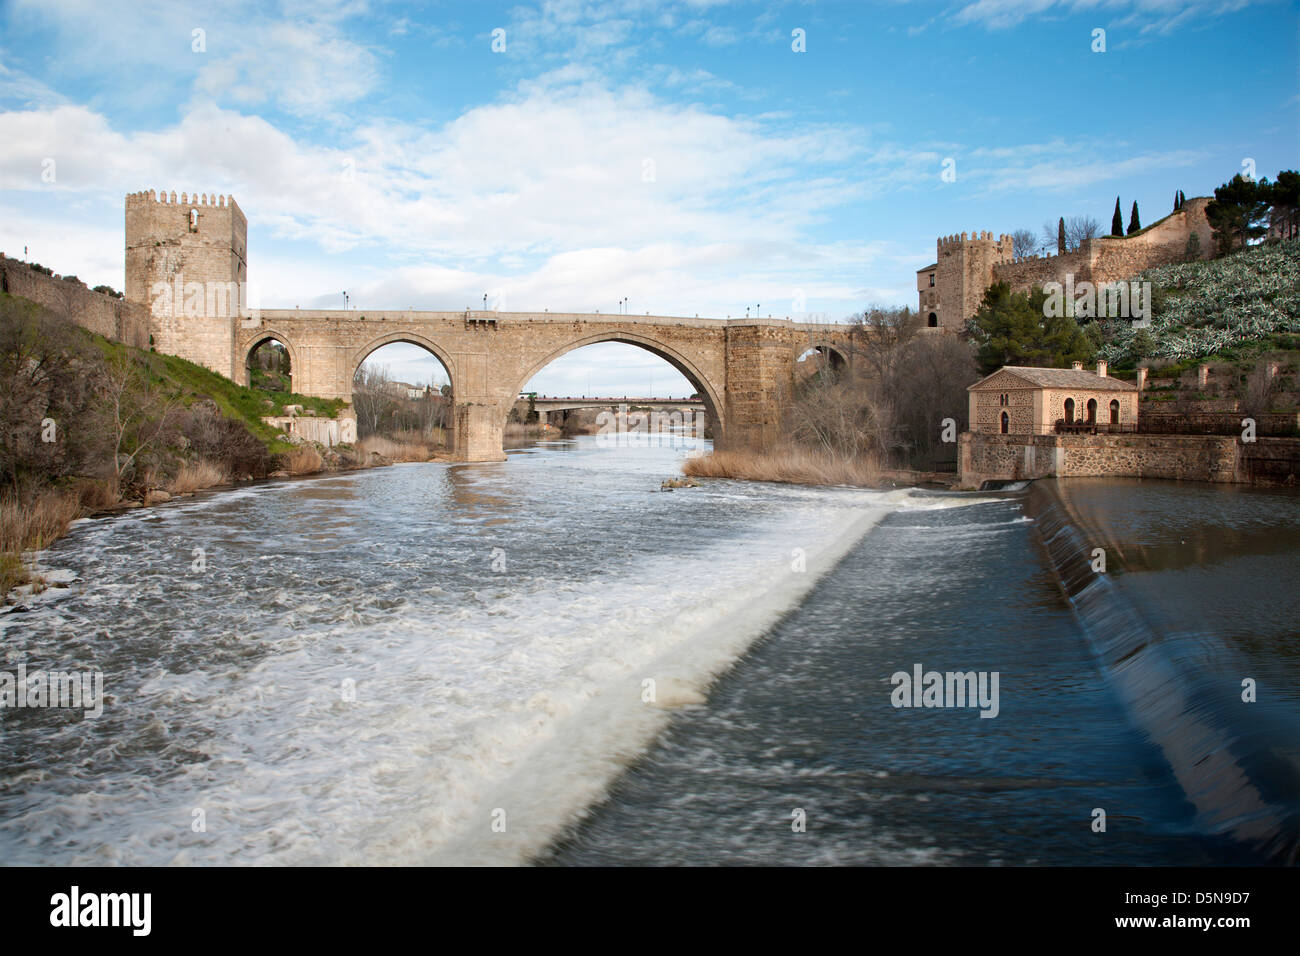 Toledo - Puente de San Martin bridge Banque D'Images